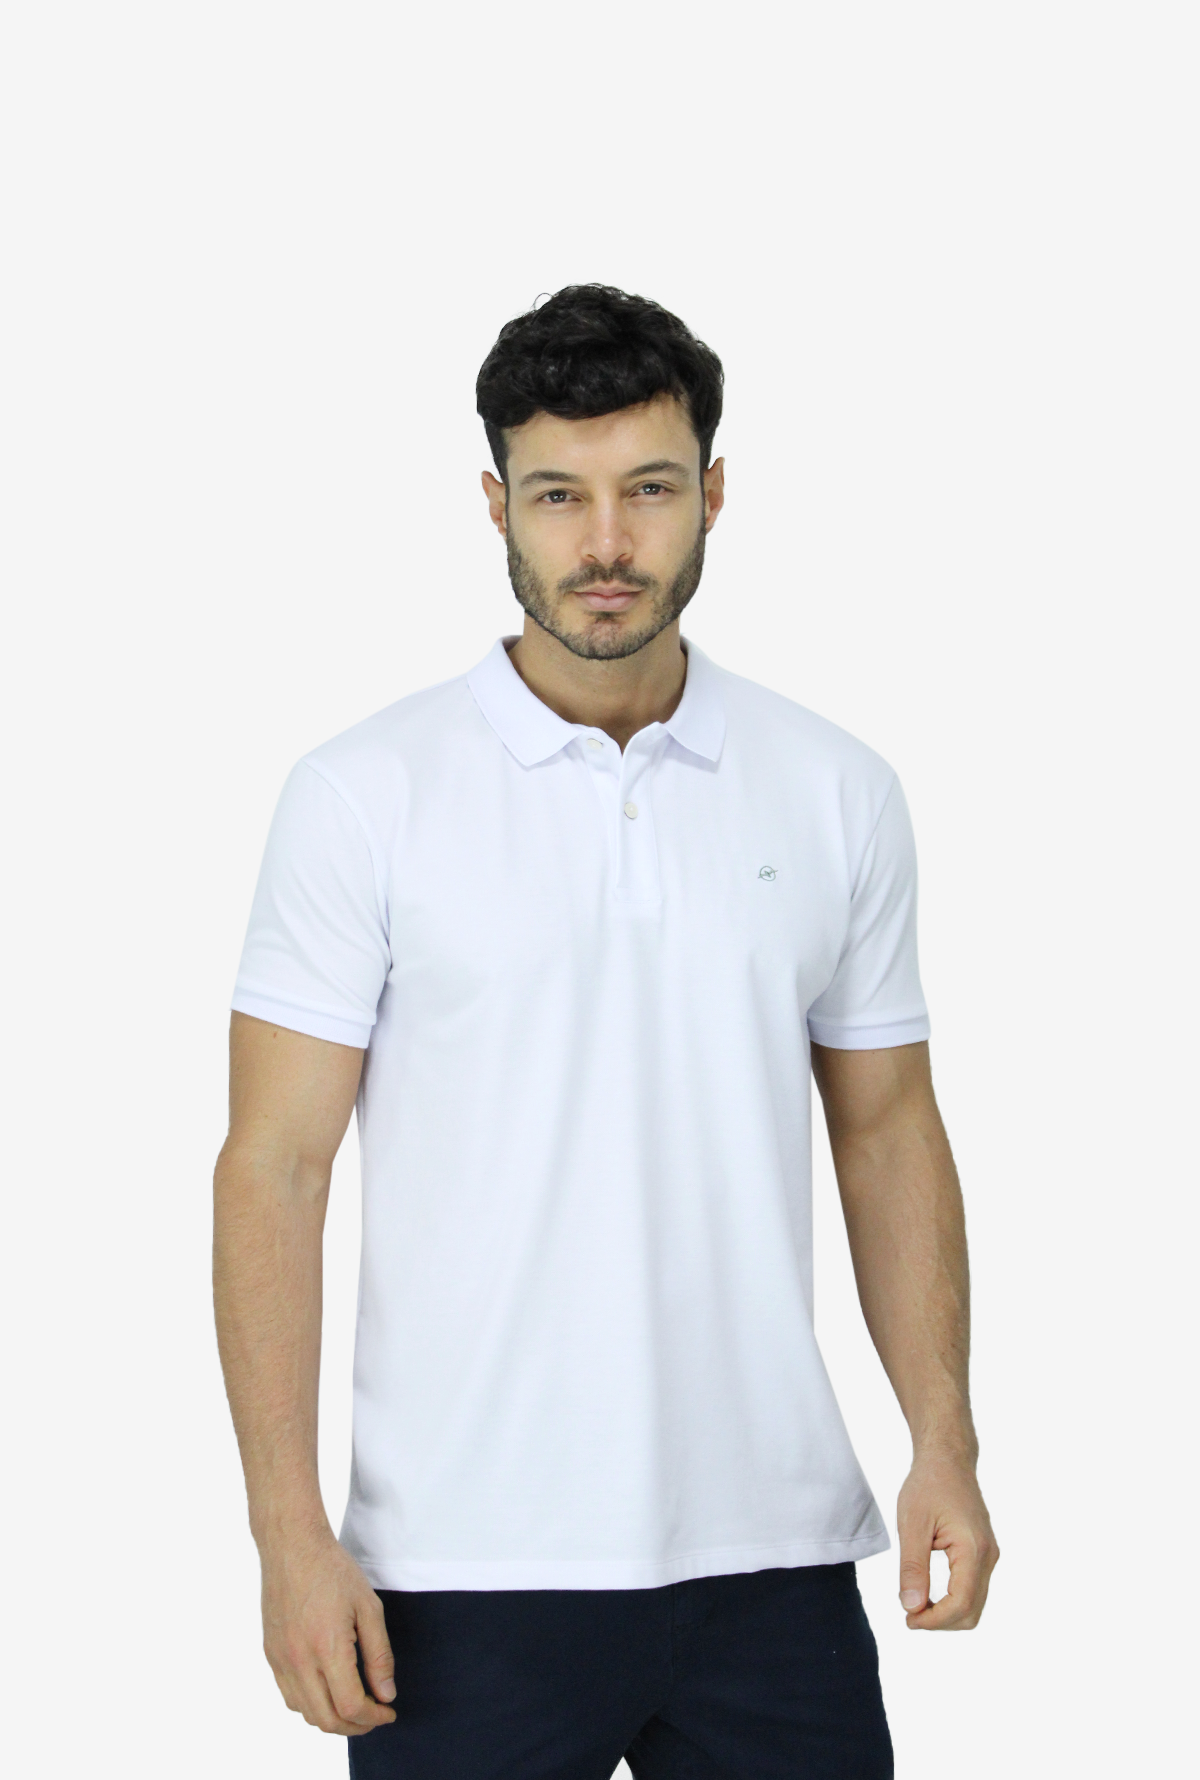 Camiseta Tipo Polo Blanca Para Hombre  DMPOUT01